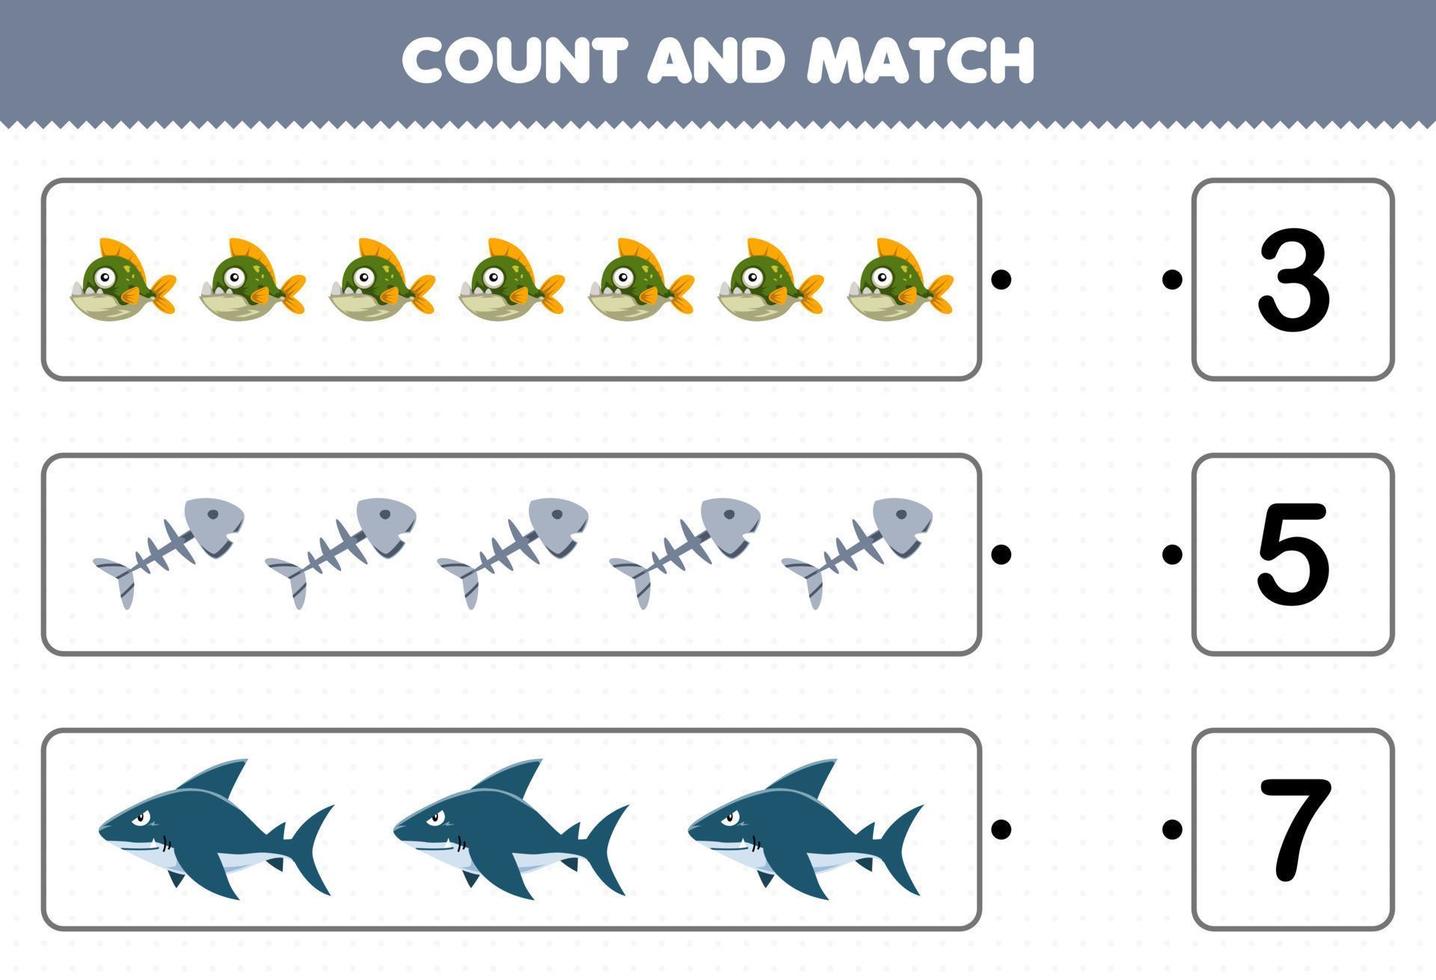 jogo de educação para crianças conte o número de tubarão de osso de peixe piranha bonito dos desenhos animados e combine com os números certos planilha subaquática imprimível vetor